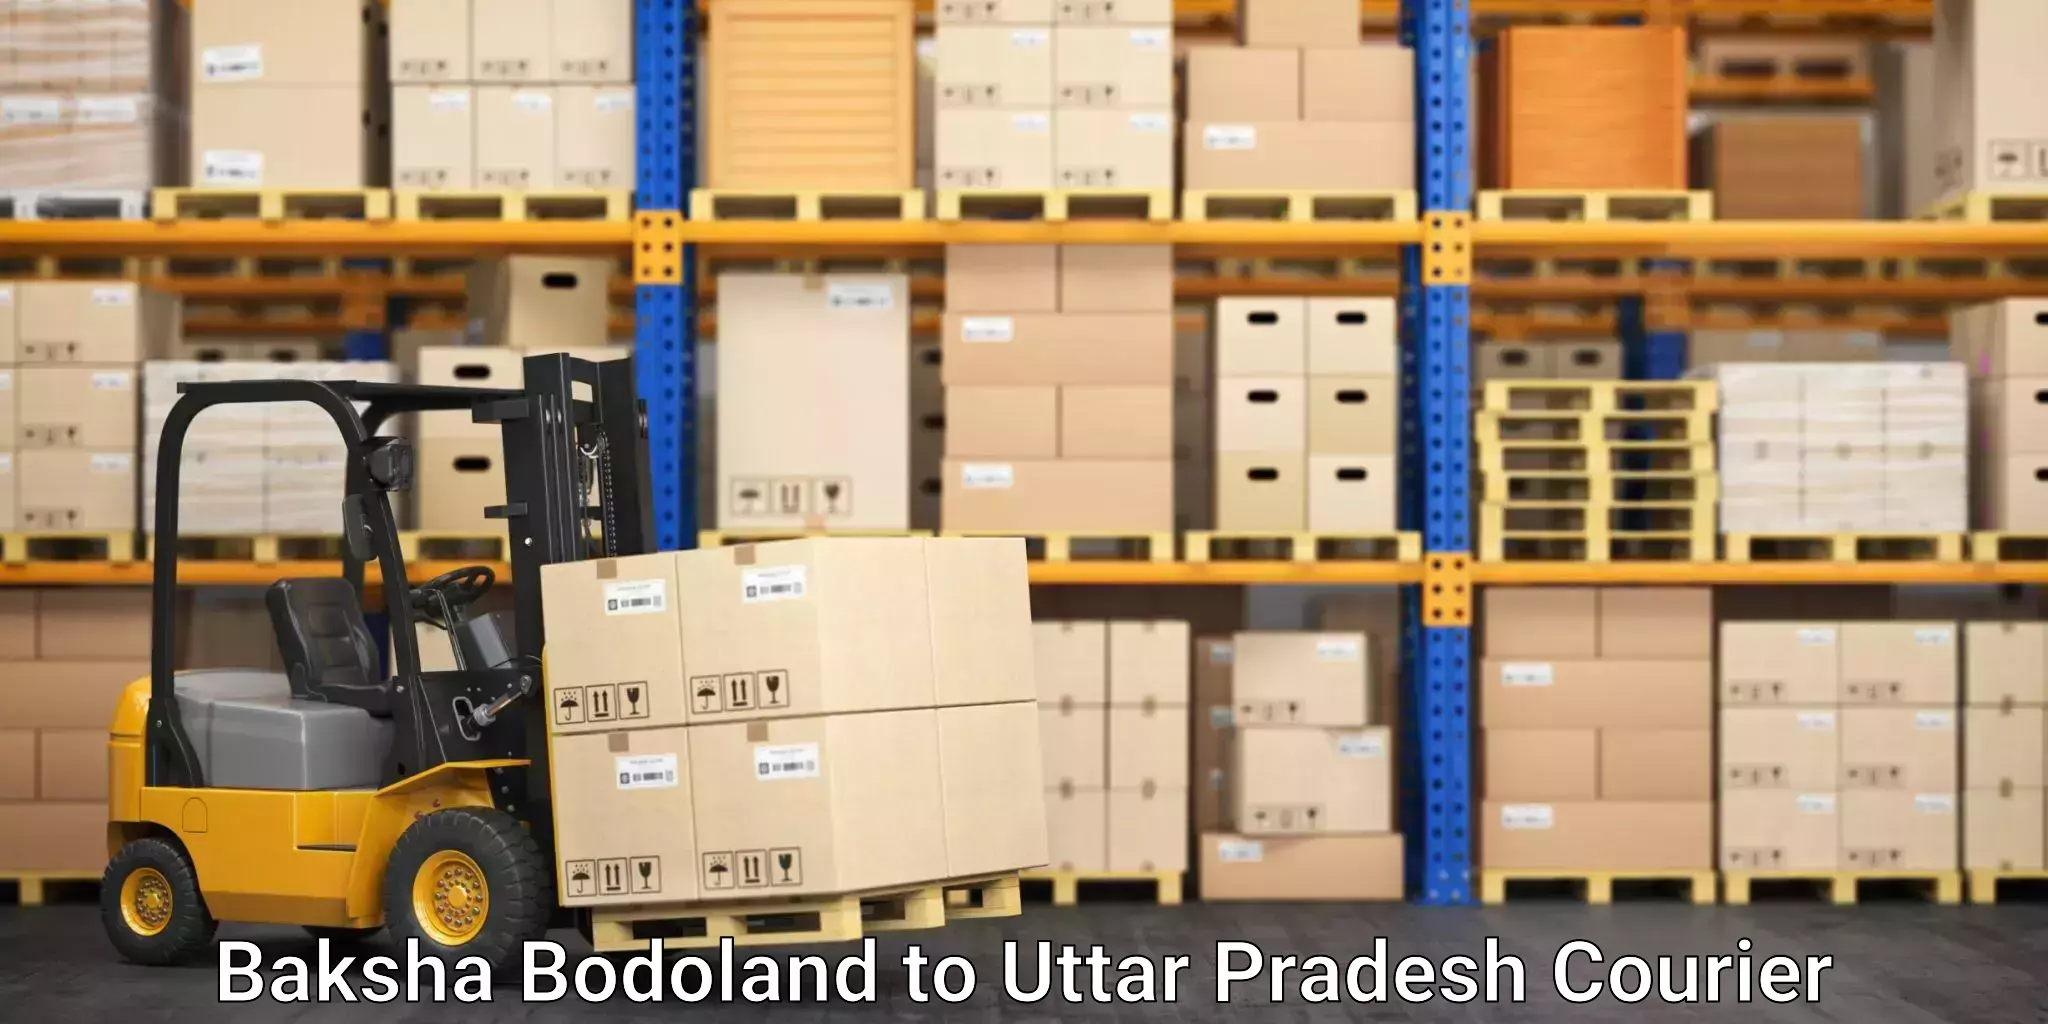 Nationwide delivery network Baksha Bodoland to Uttar Pradesh